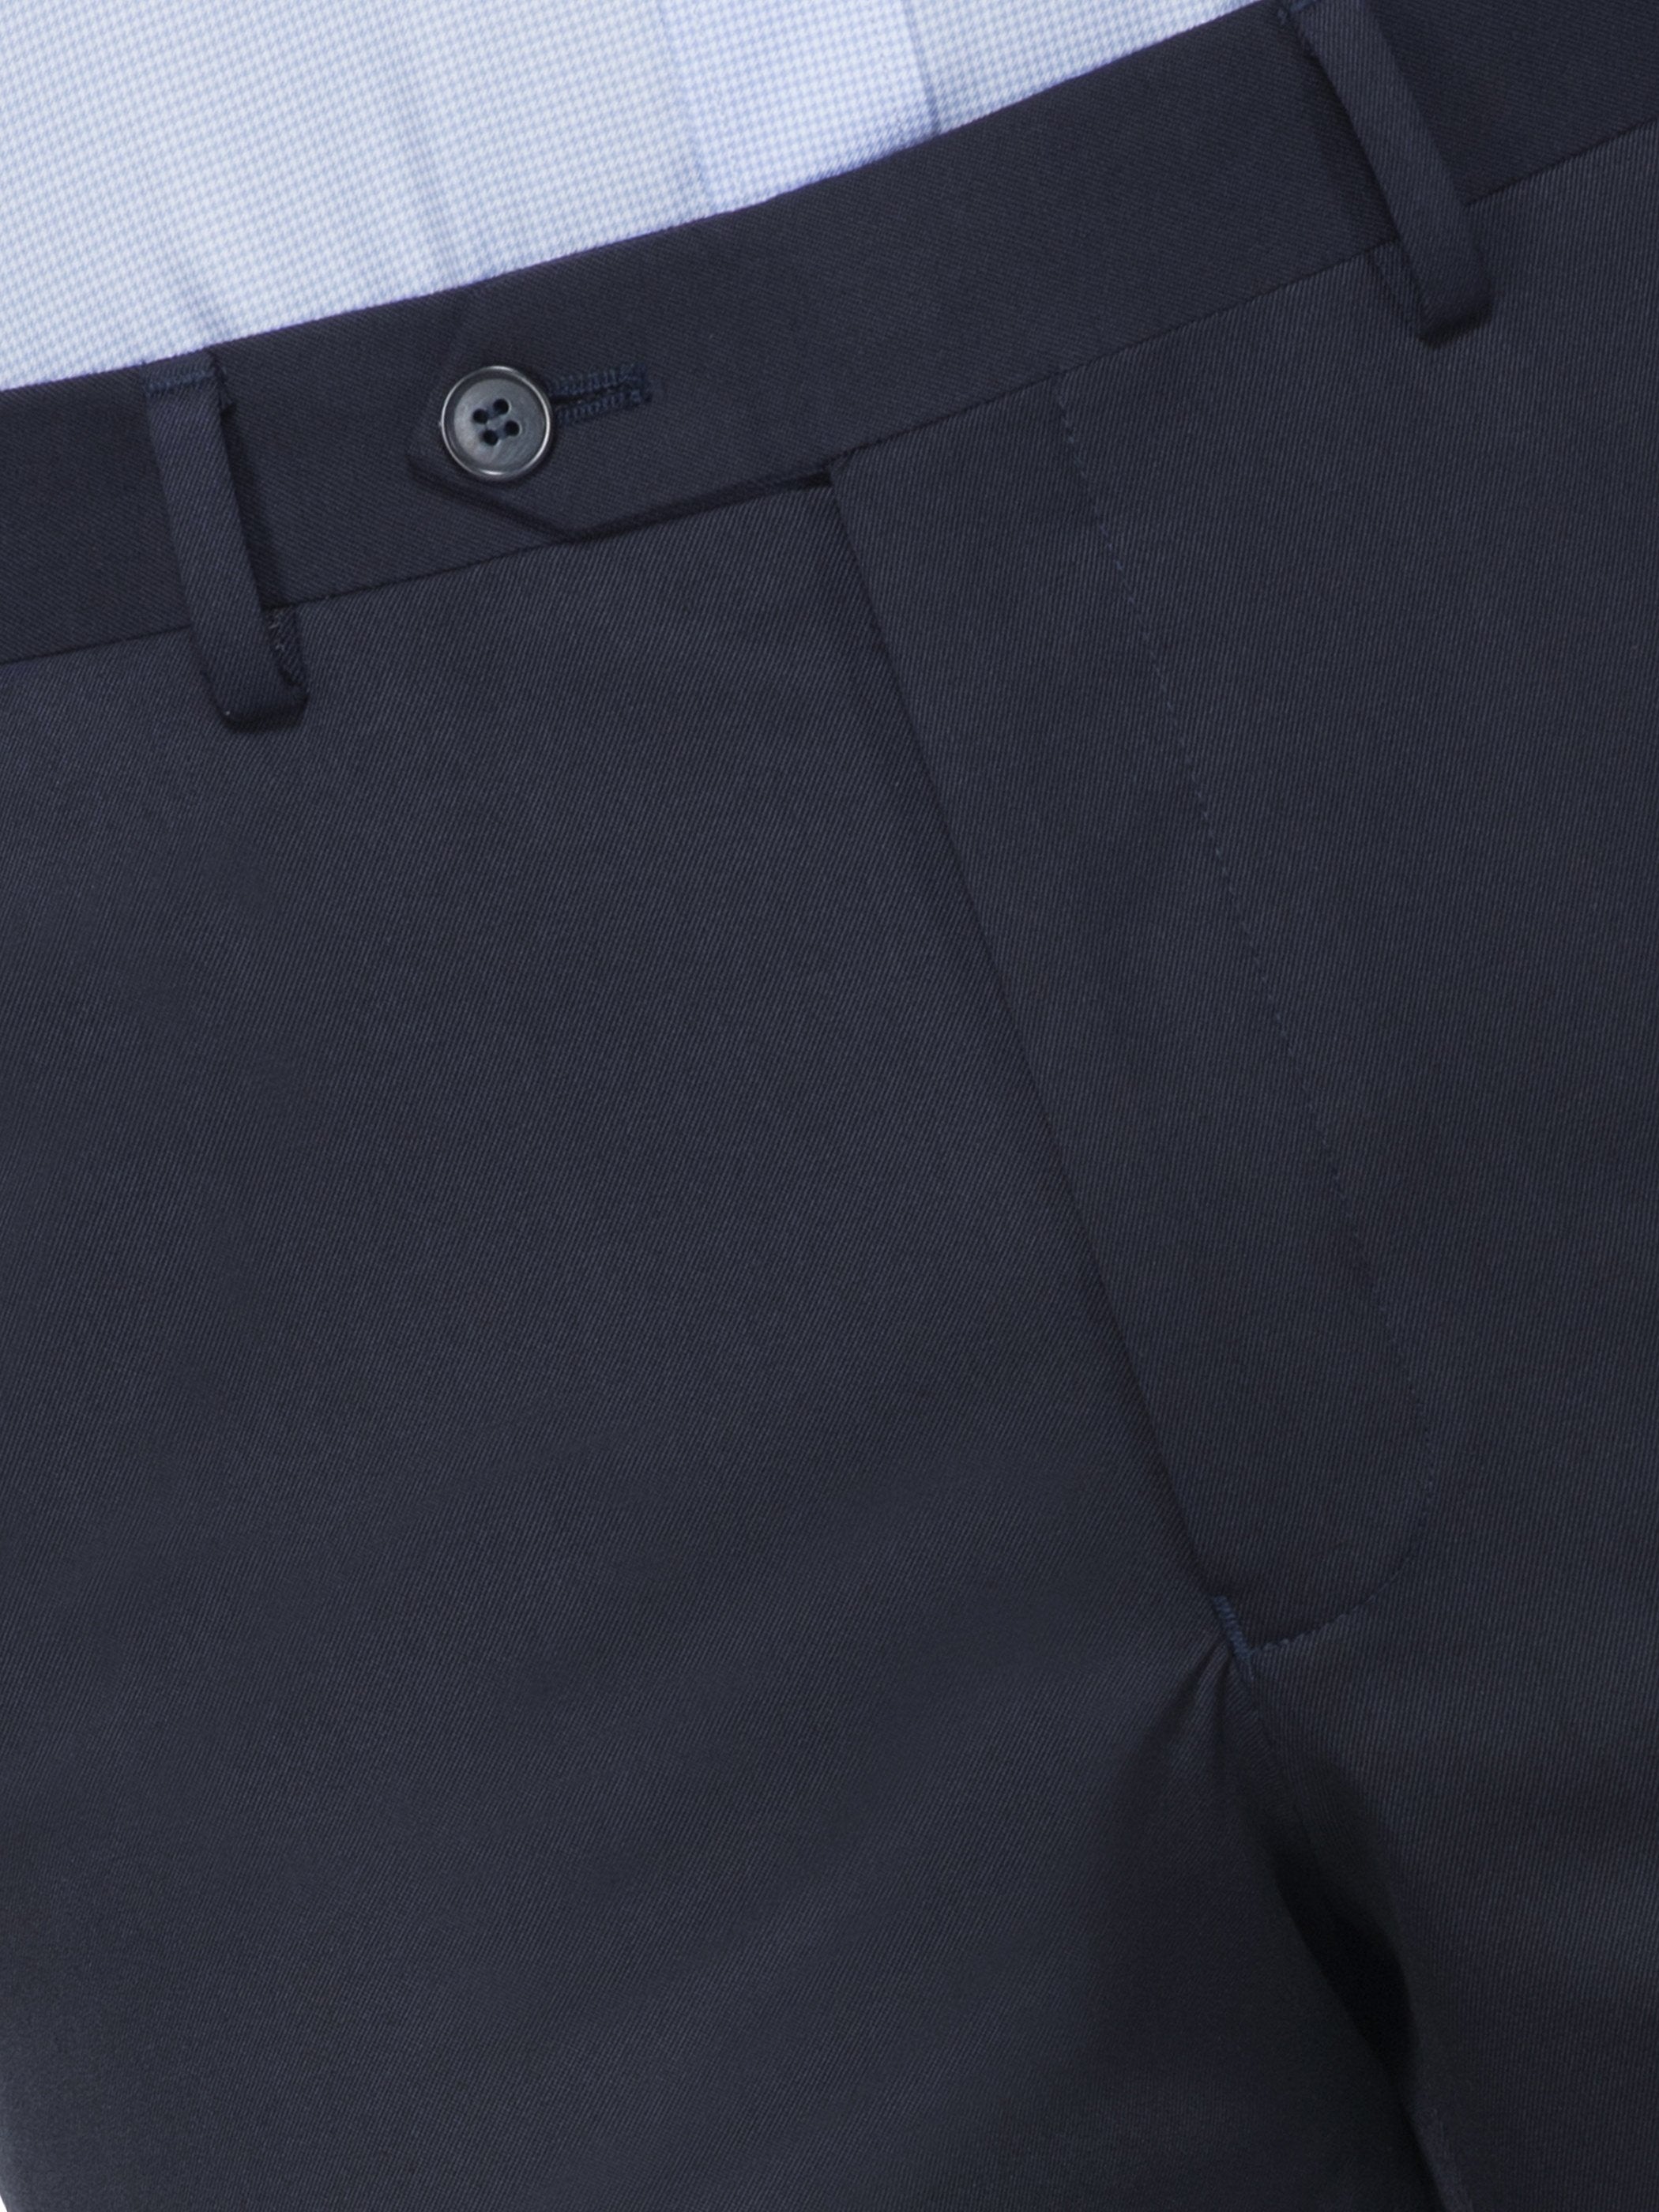 GIVO Slim Fit Men Brown Trousers - Buy GIVO Slim Fit Men Brown Trousers  Online at Best Prices in India | Flipkart.com